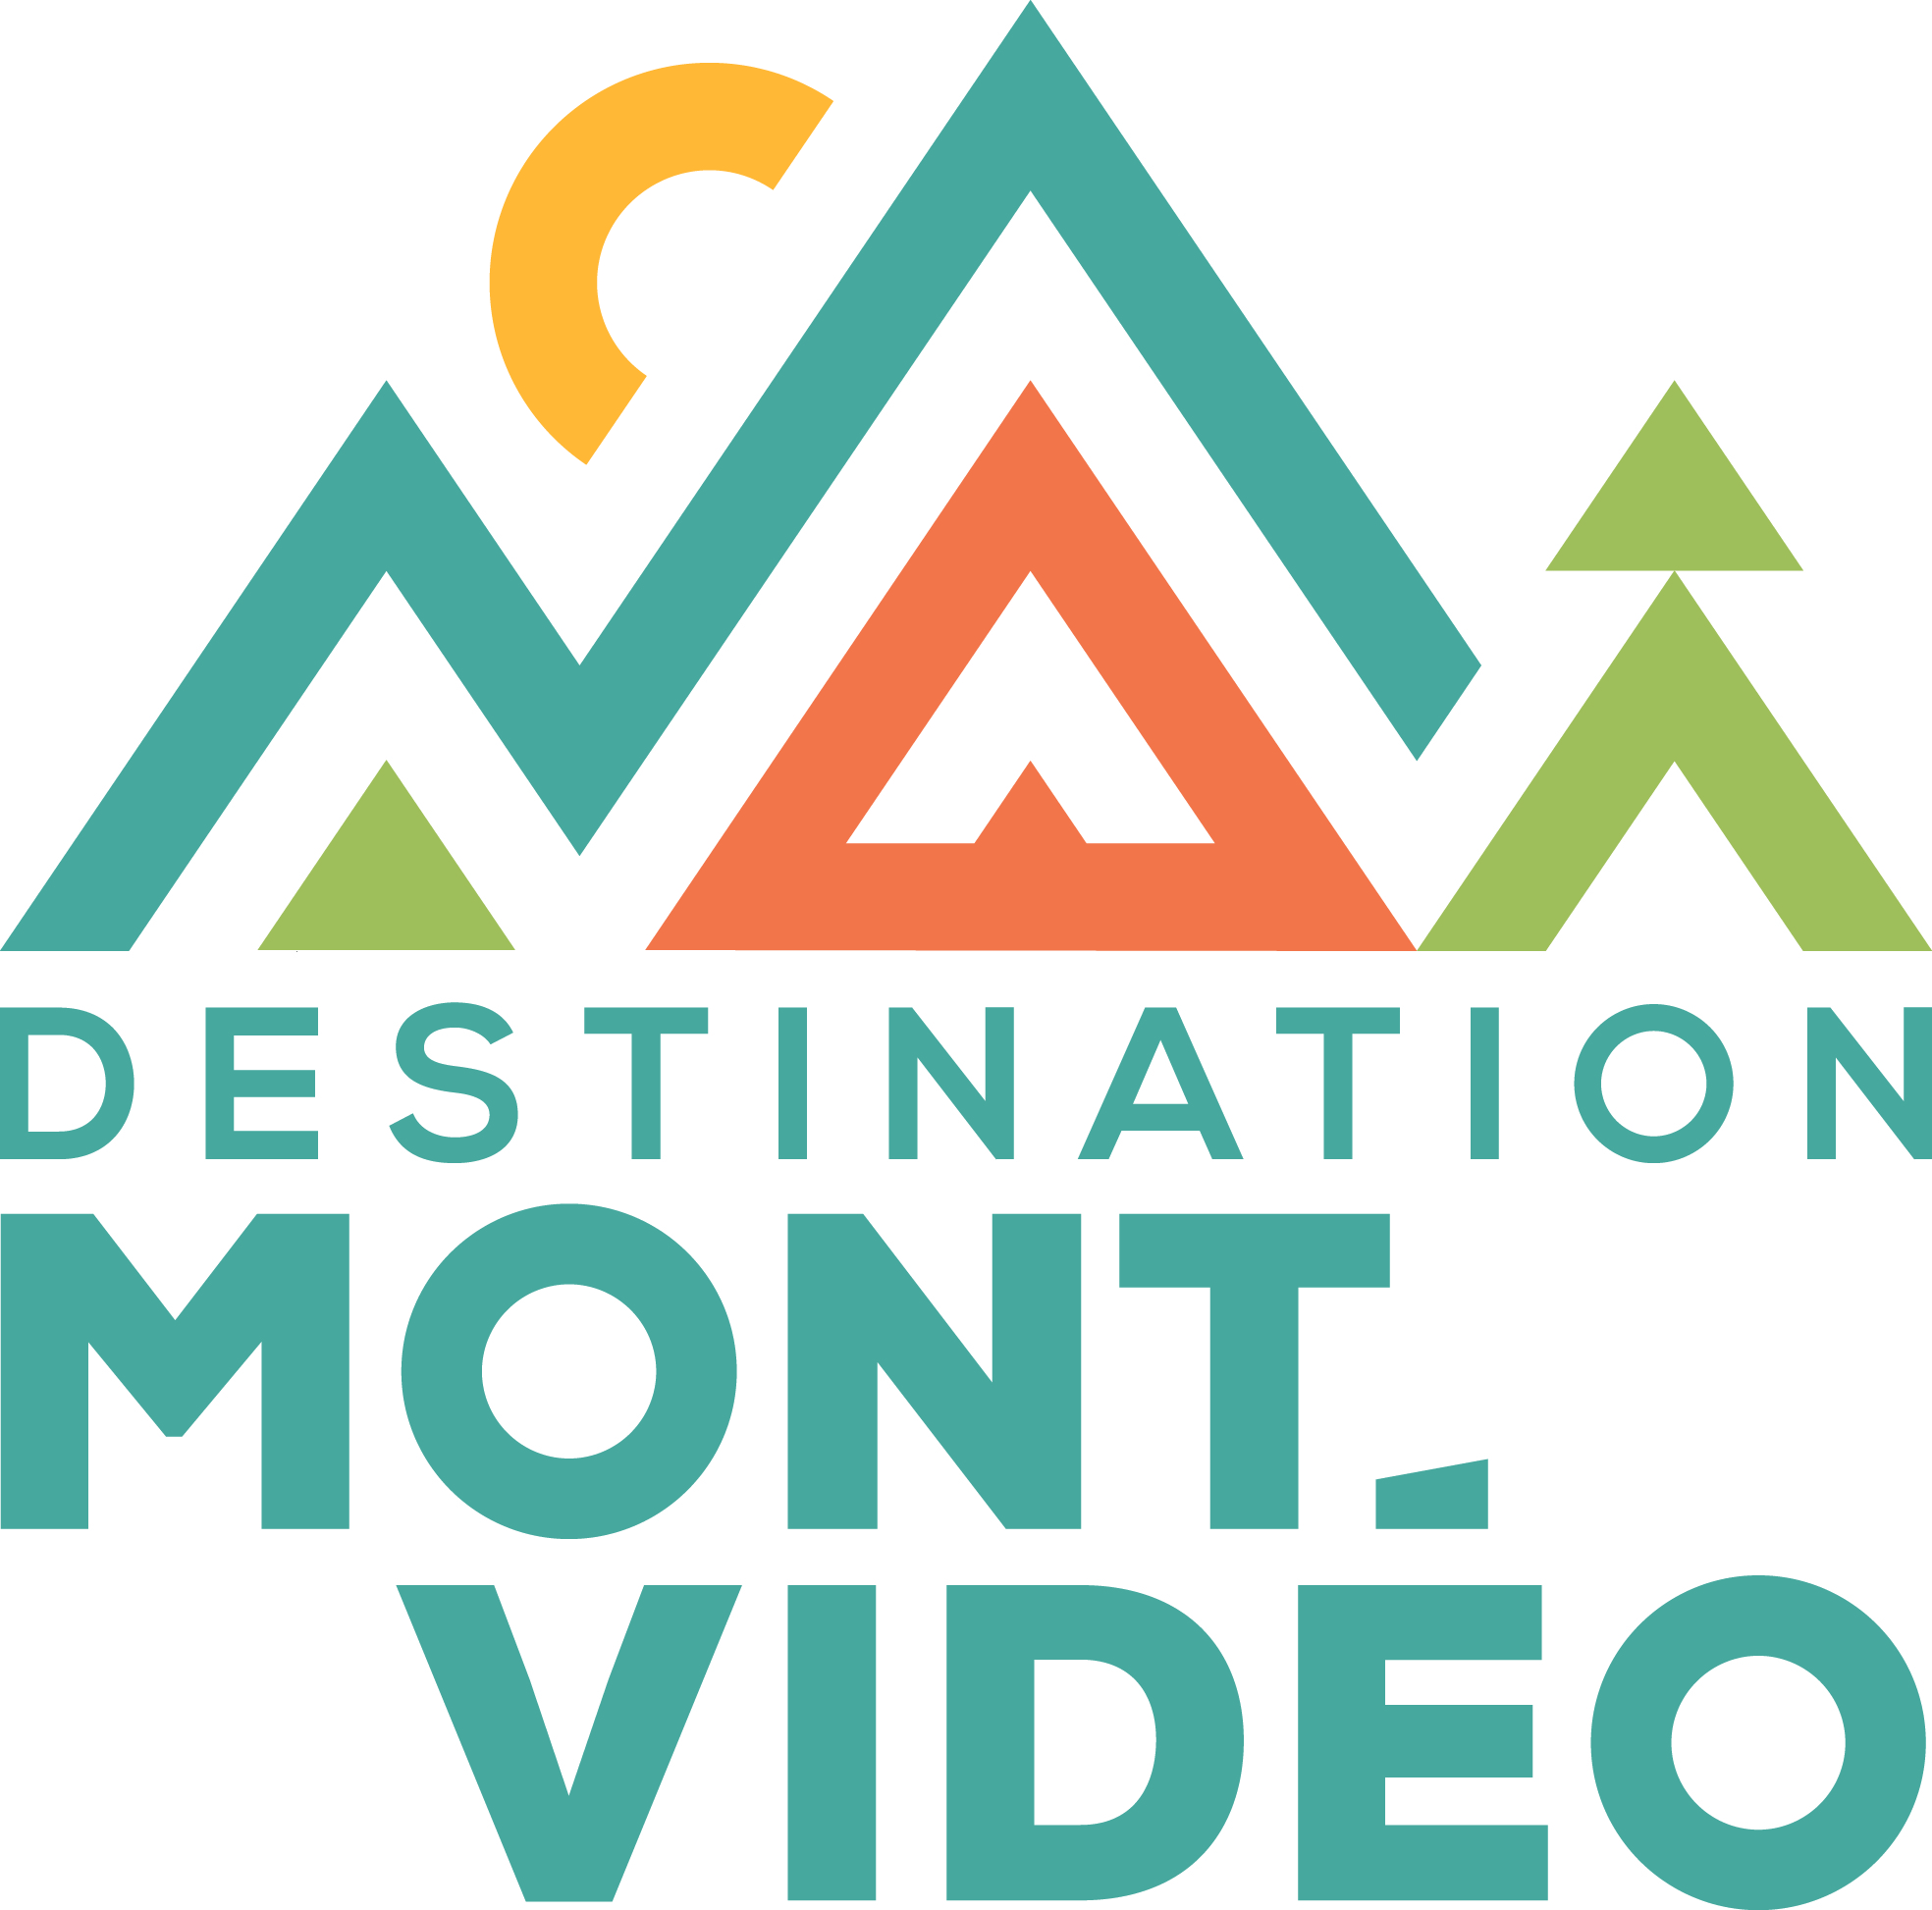 Mont-Vidéo